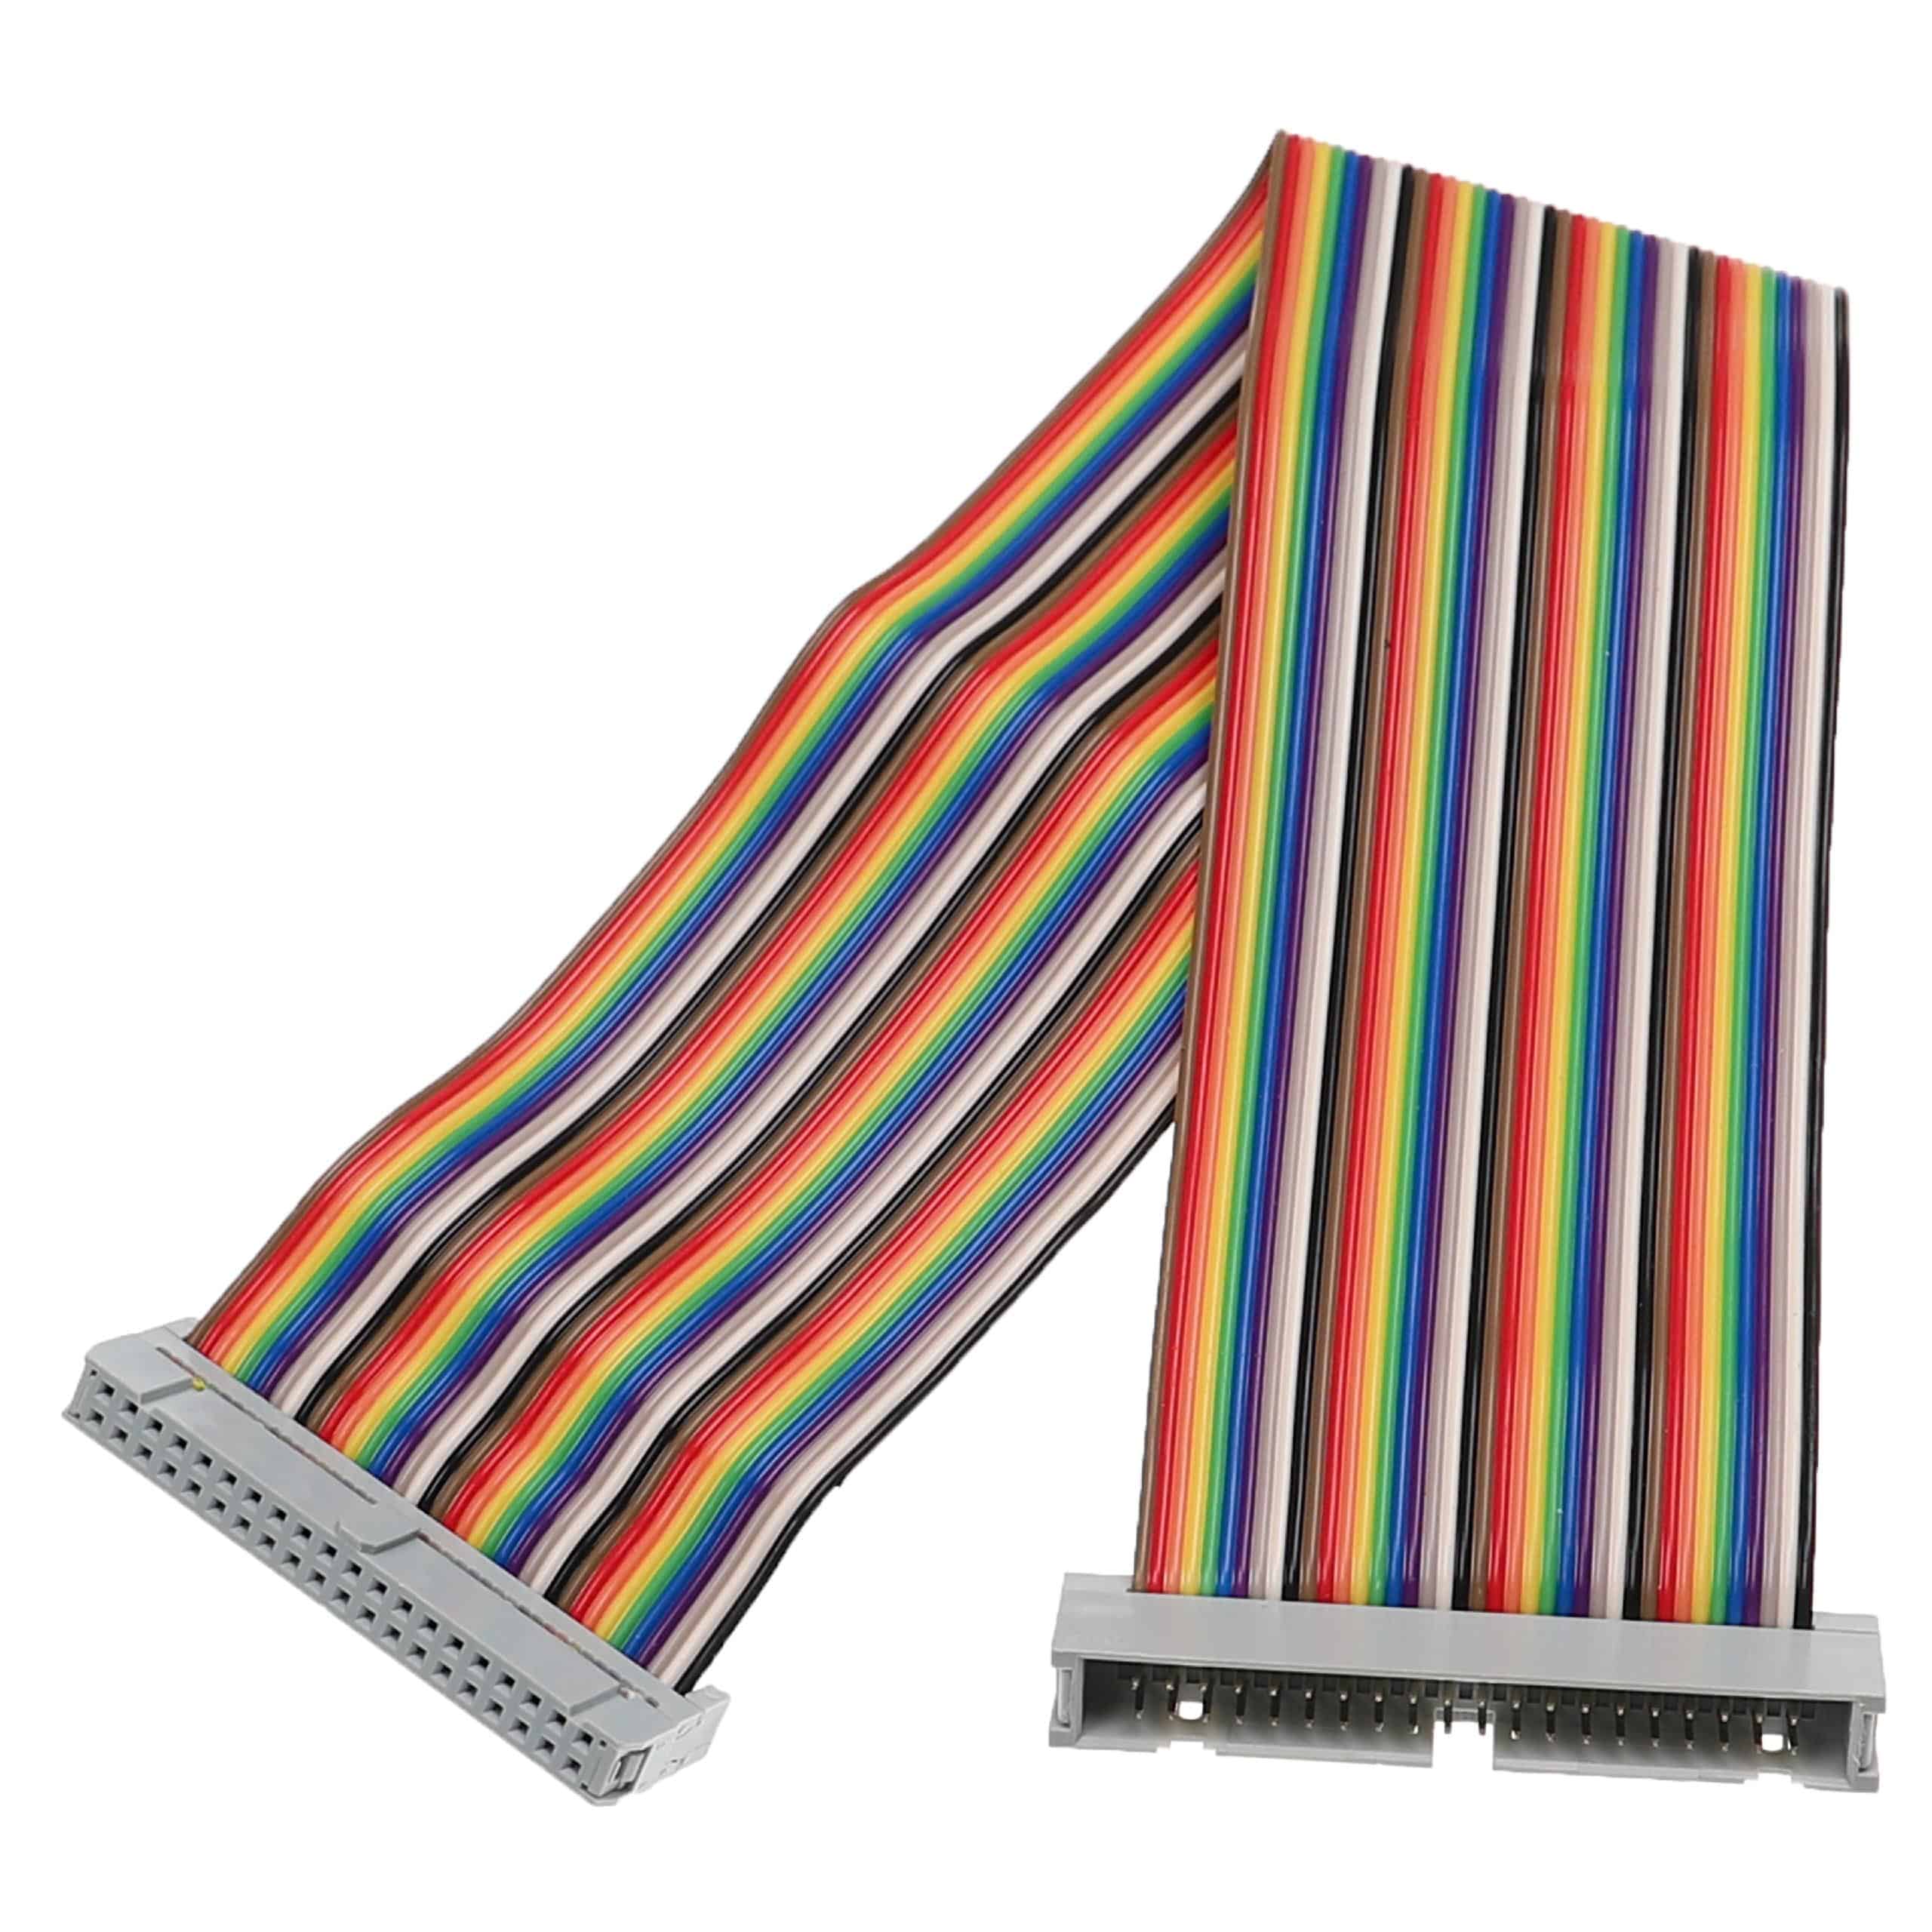 Cavo GPIO da 40 pin adatto a Raspberry Pi minicomputer - Cavo di prolunga GPIO multicolore, 30 cm